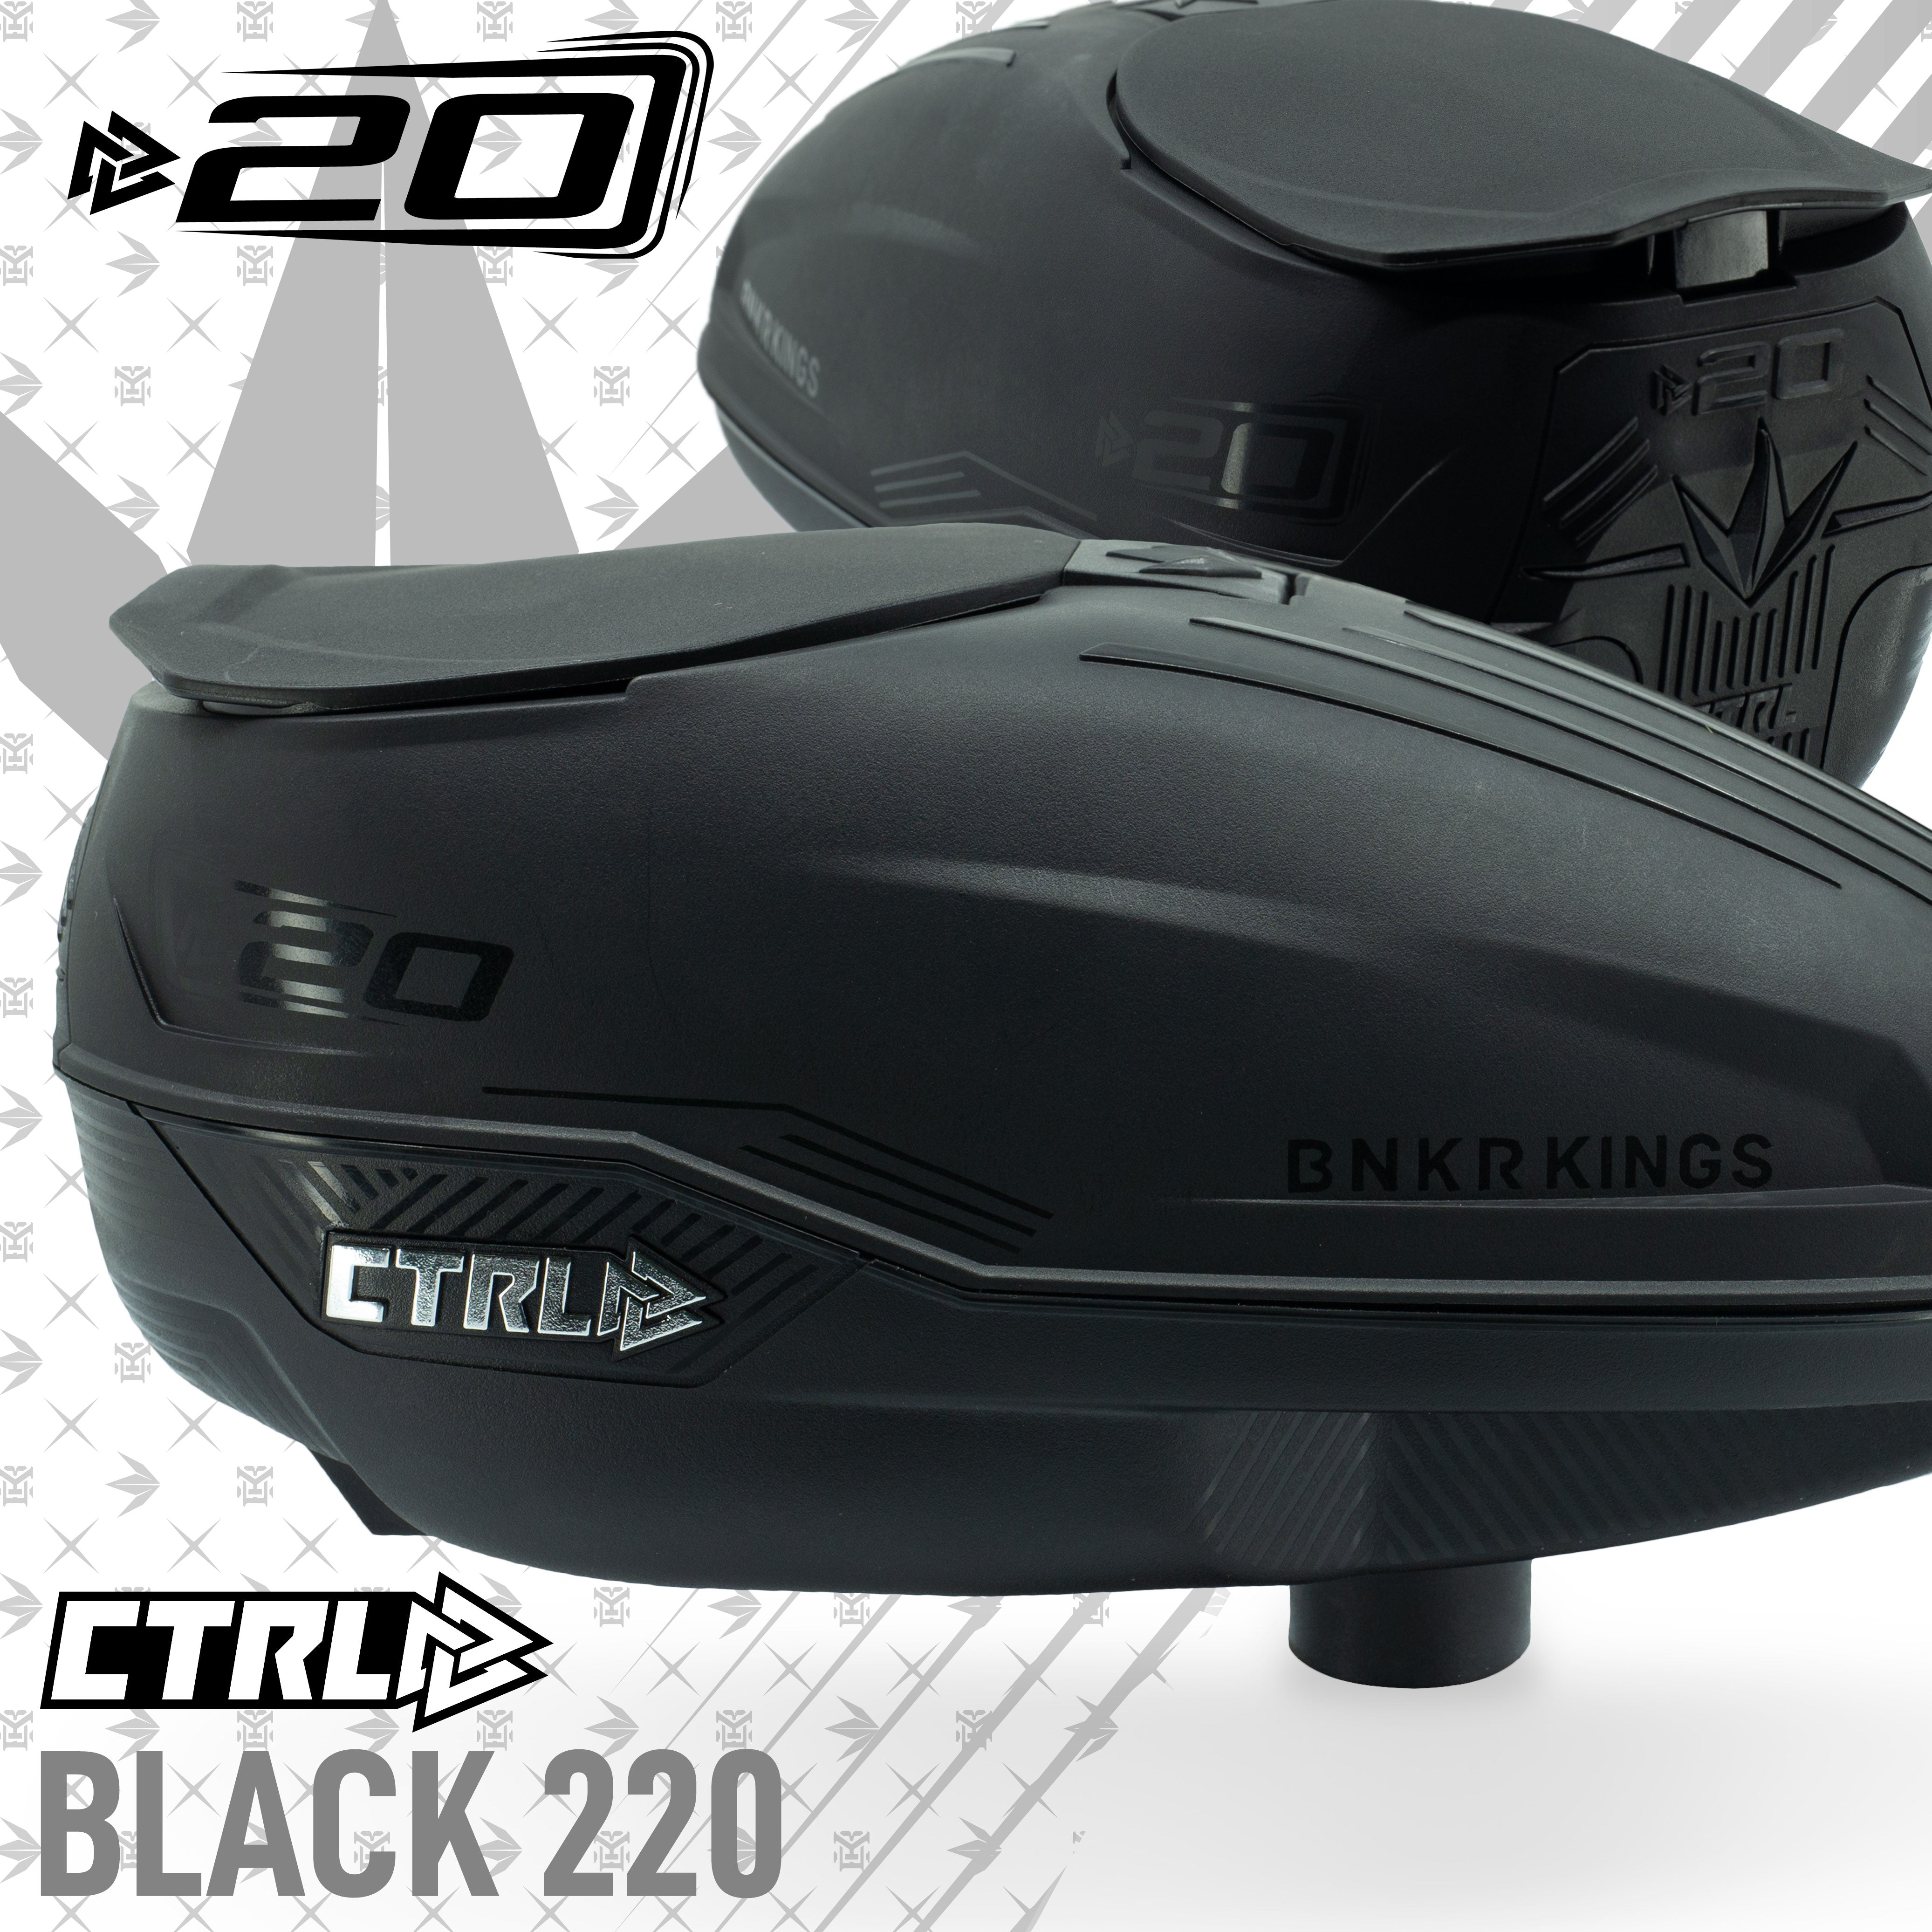 Bunkerkings CTRL Loader - Black 220